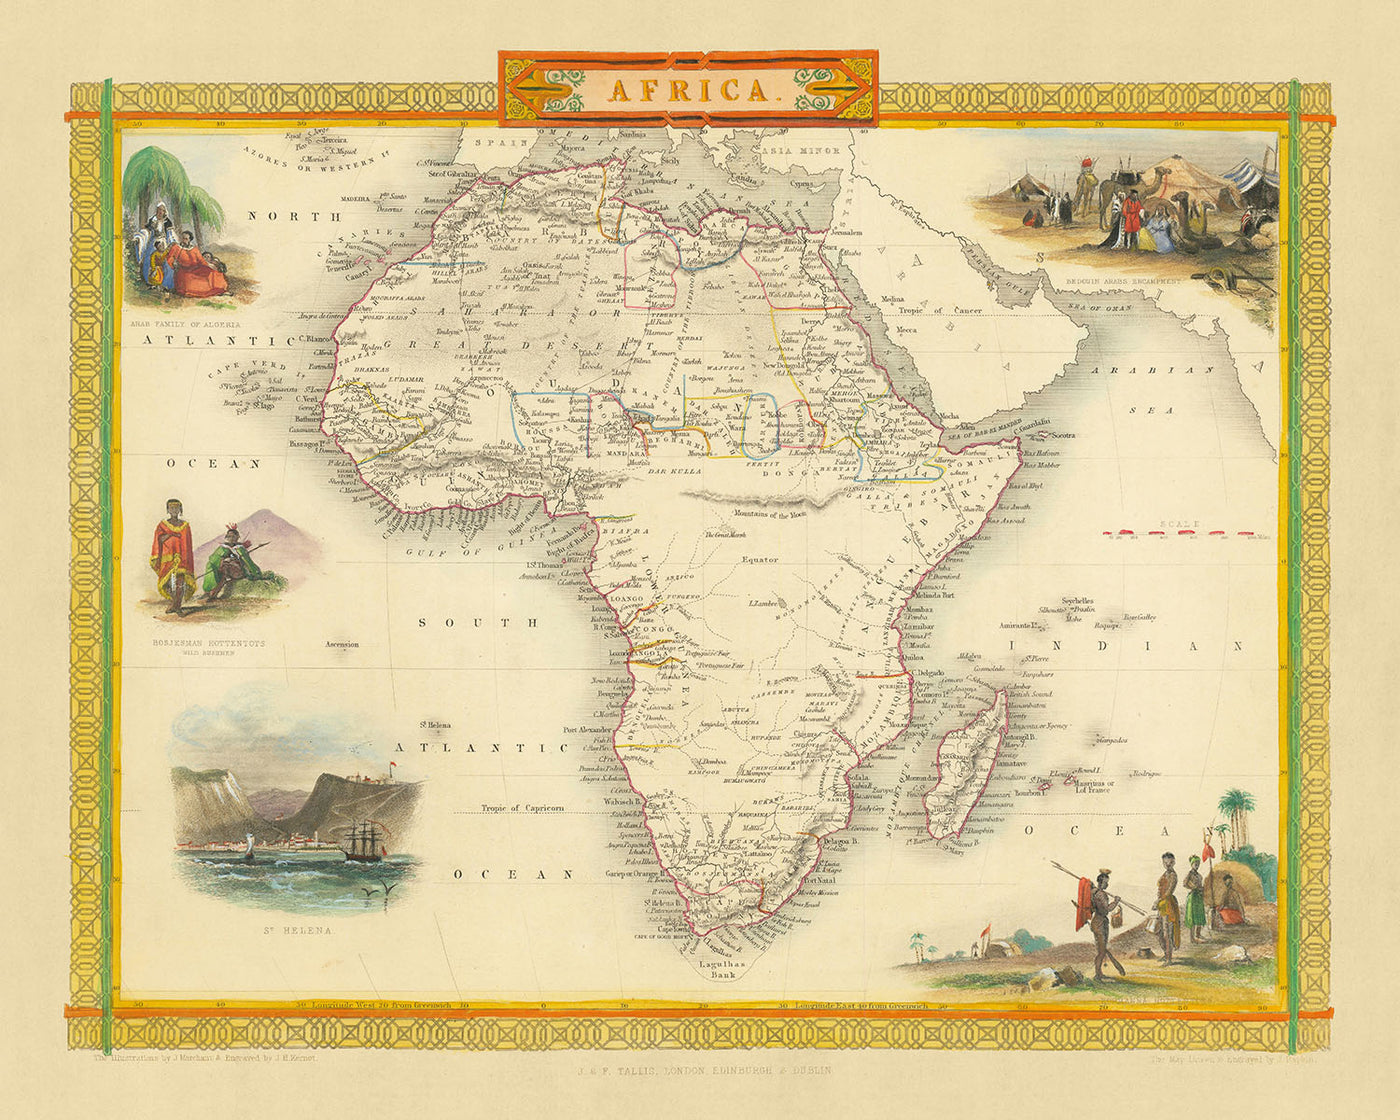 Alte Weltkarte von Afrika von Tallis & Rapkin, 1851: Detaillierte politische und physische, dekorative Vignetten, Weltkarte